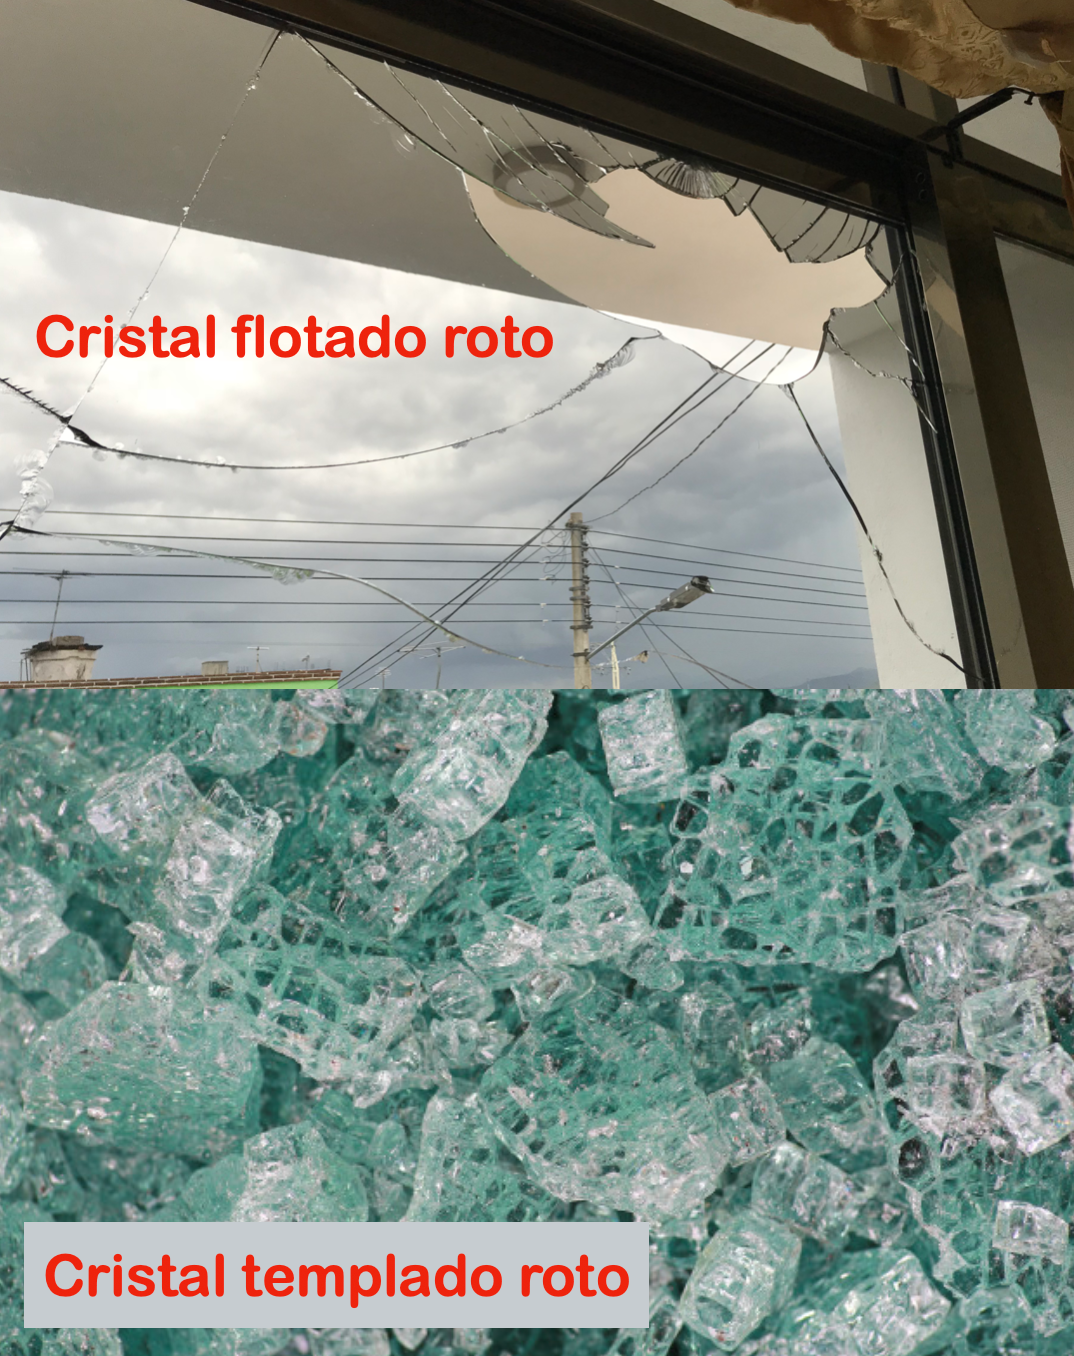 Diferencia entre un cristal flotado y un cristal templado